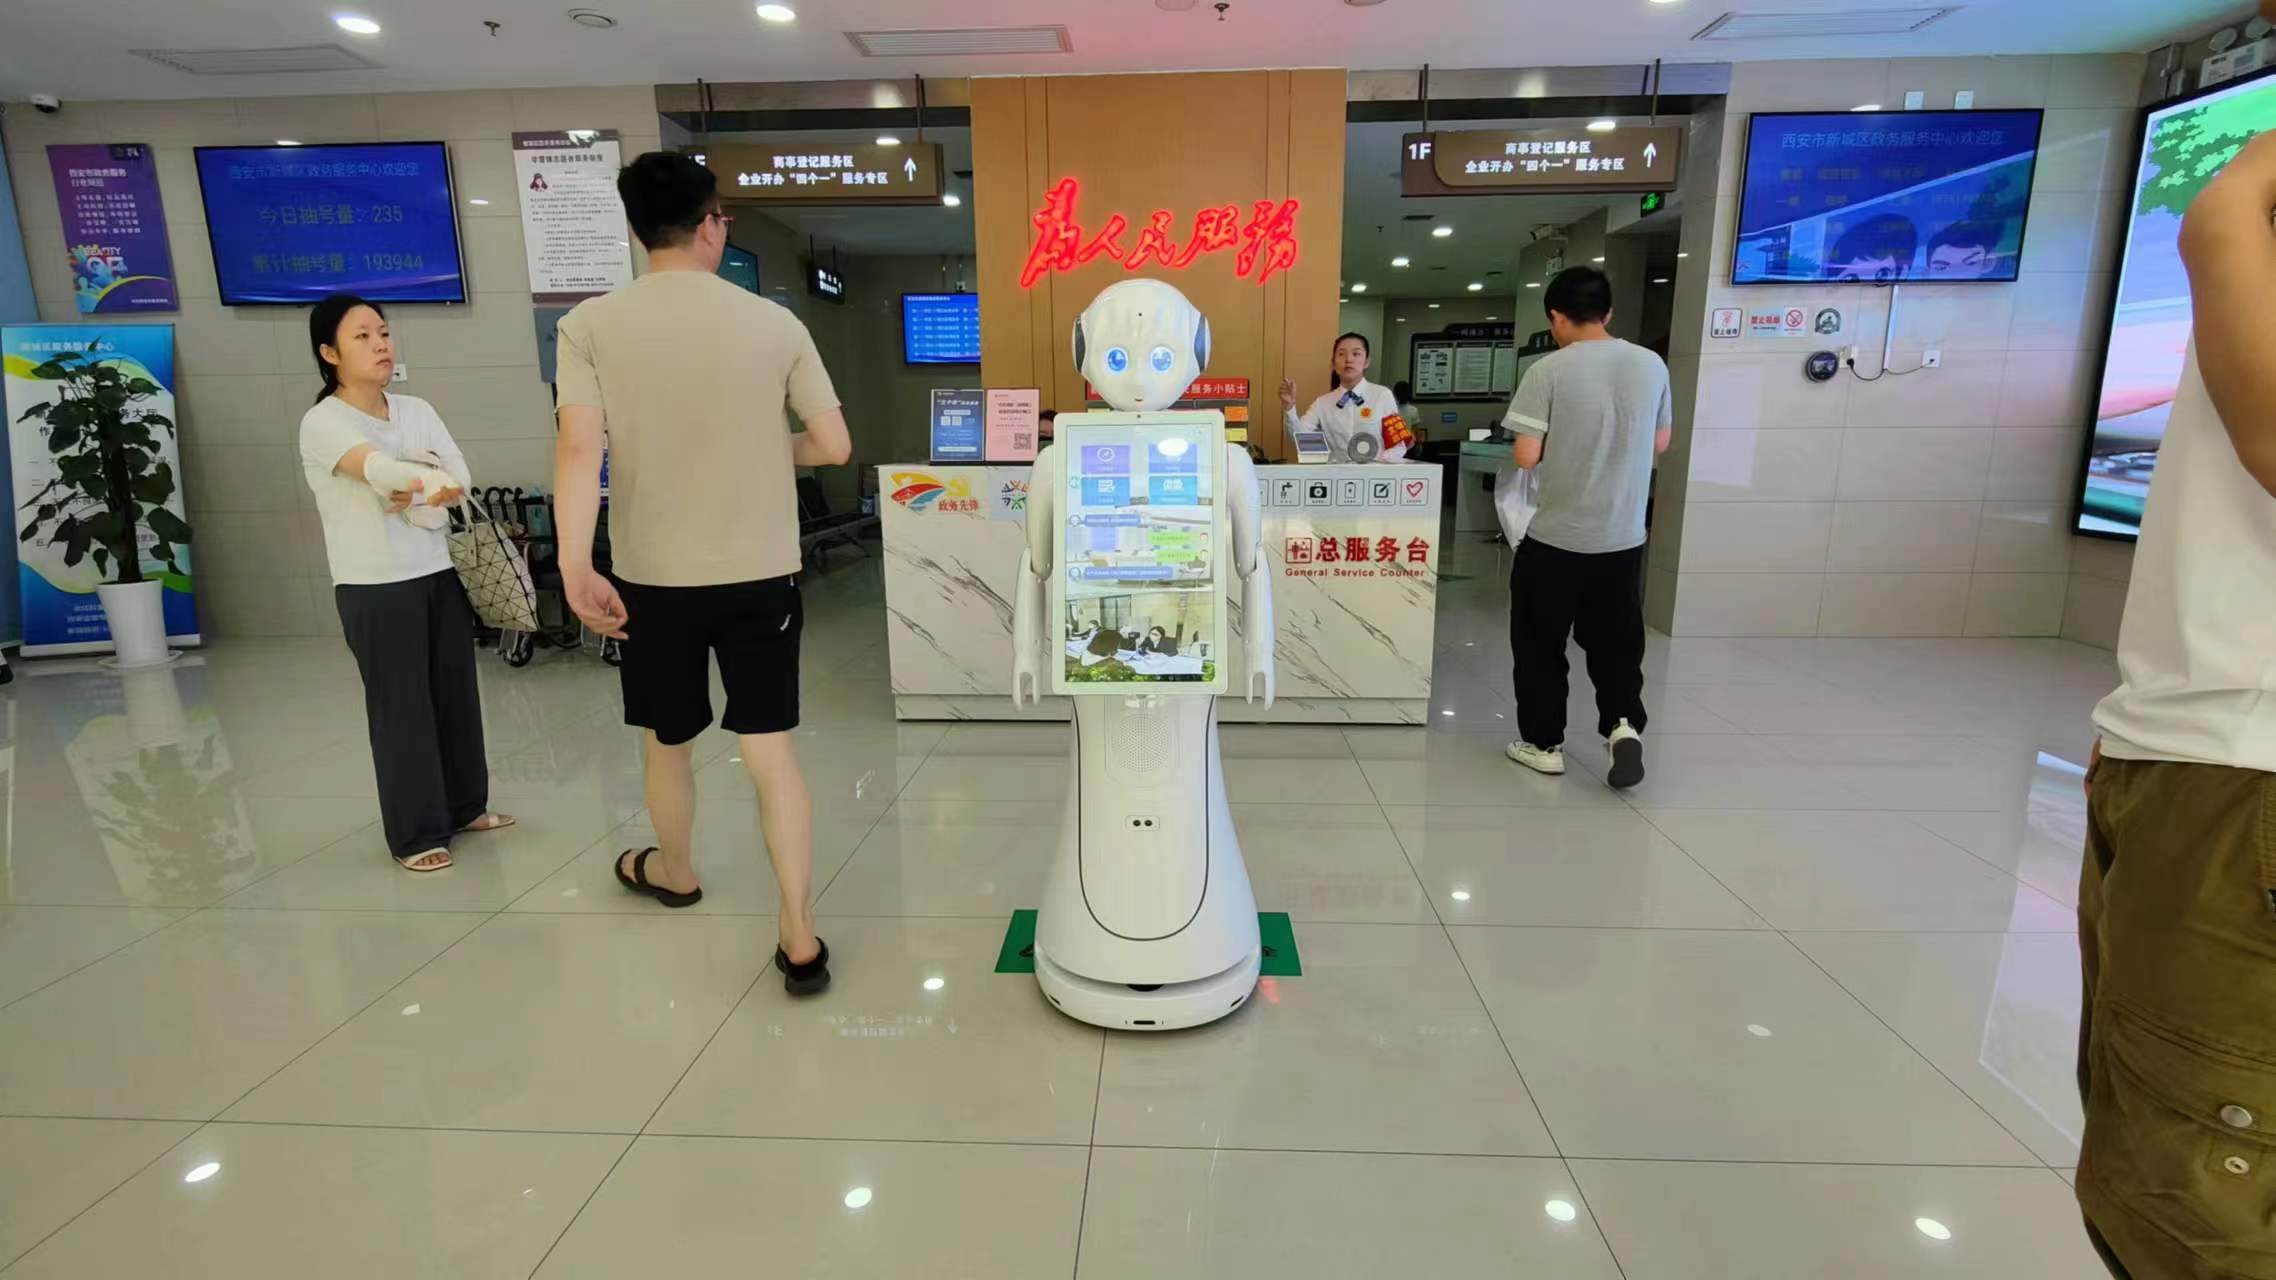 מקרה היישום של רובוט השירות Alice-AI ב"מרכז לענייני ממשל של המחוז החדש של שיאן"!